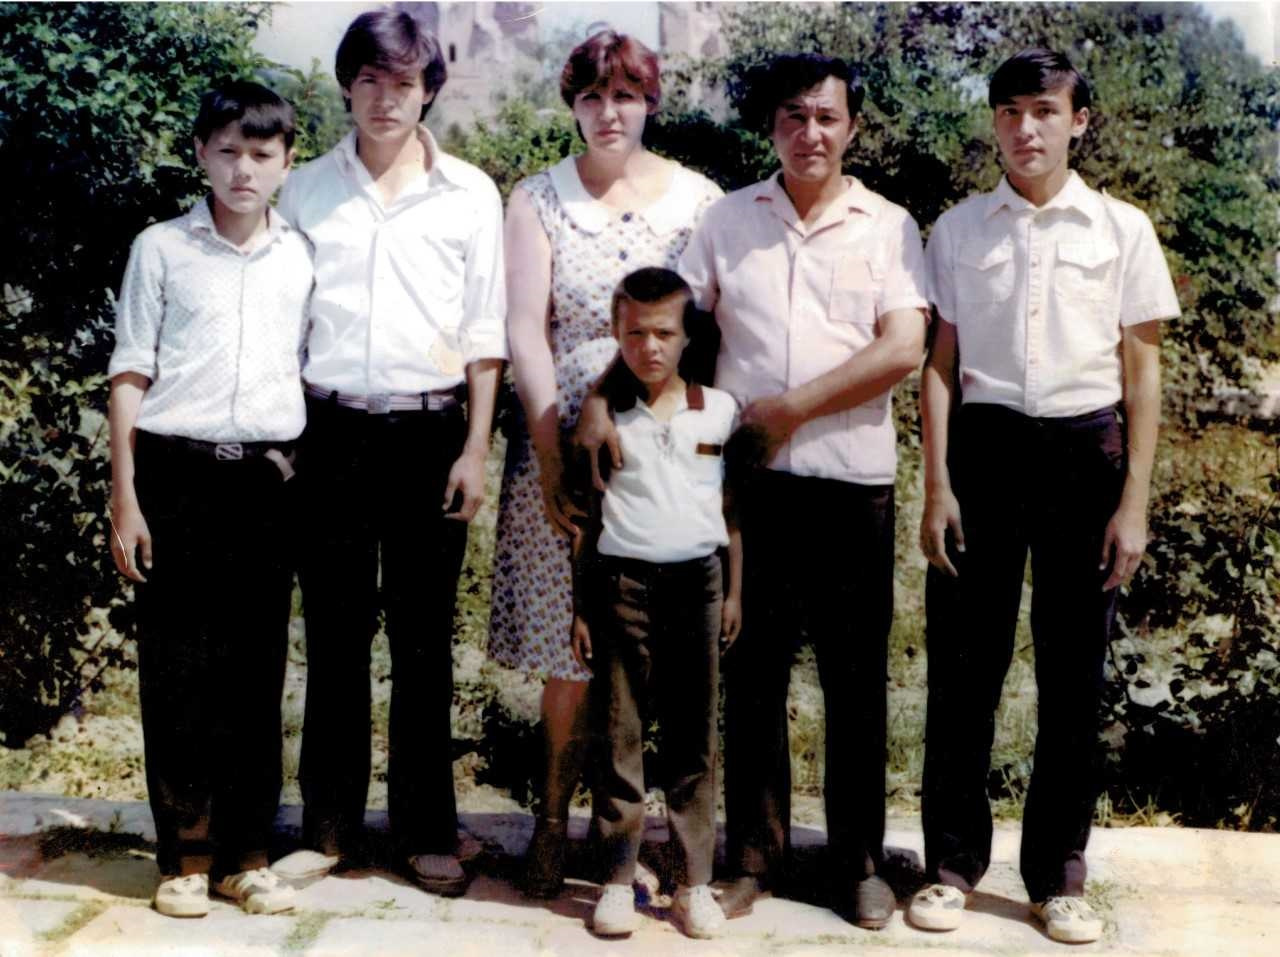 Тимур (второй слева) воспитывался в большой и дружной семье в городе Шахрисабз Узбекистана